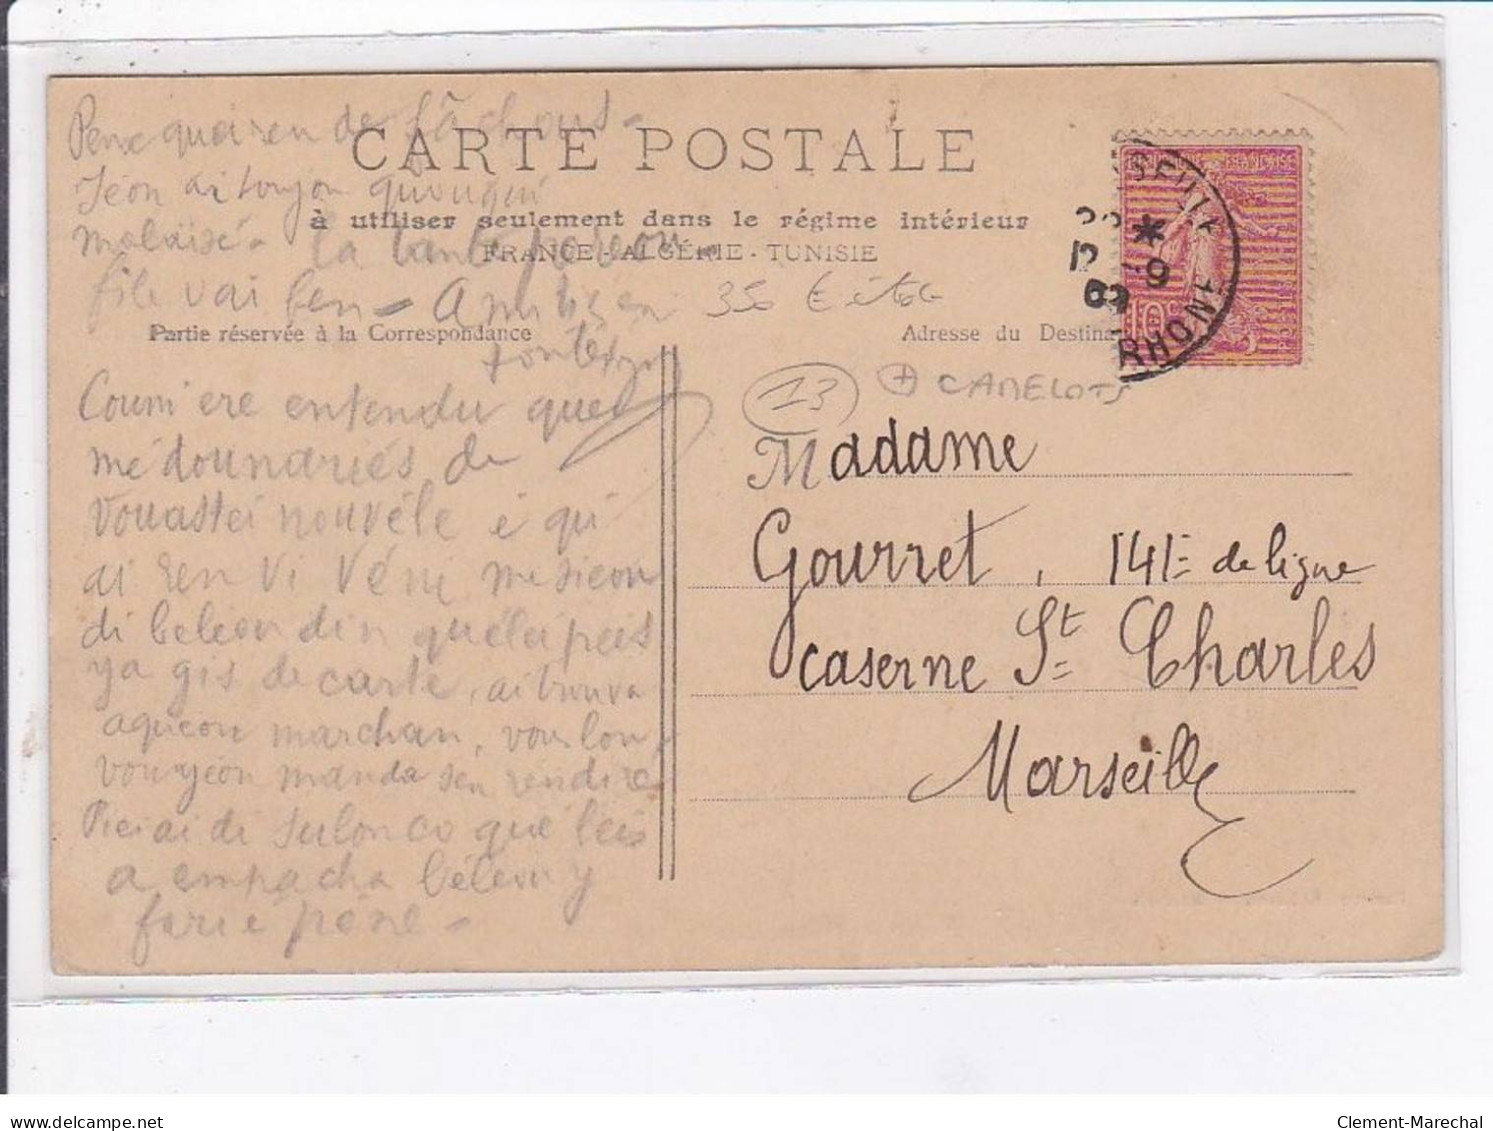 MARSEILLE: Camelot Vendant Les Cartes Postales - état - Unclassified